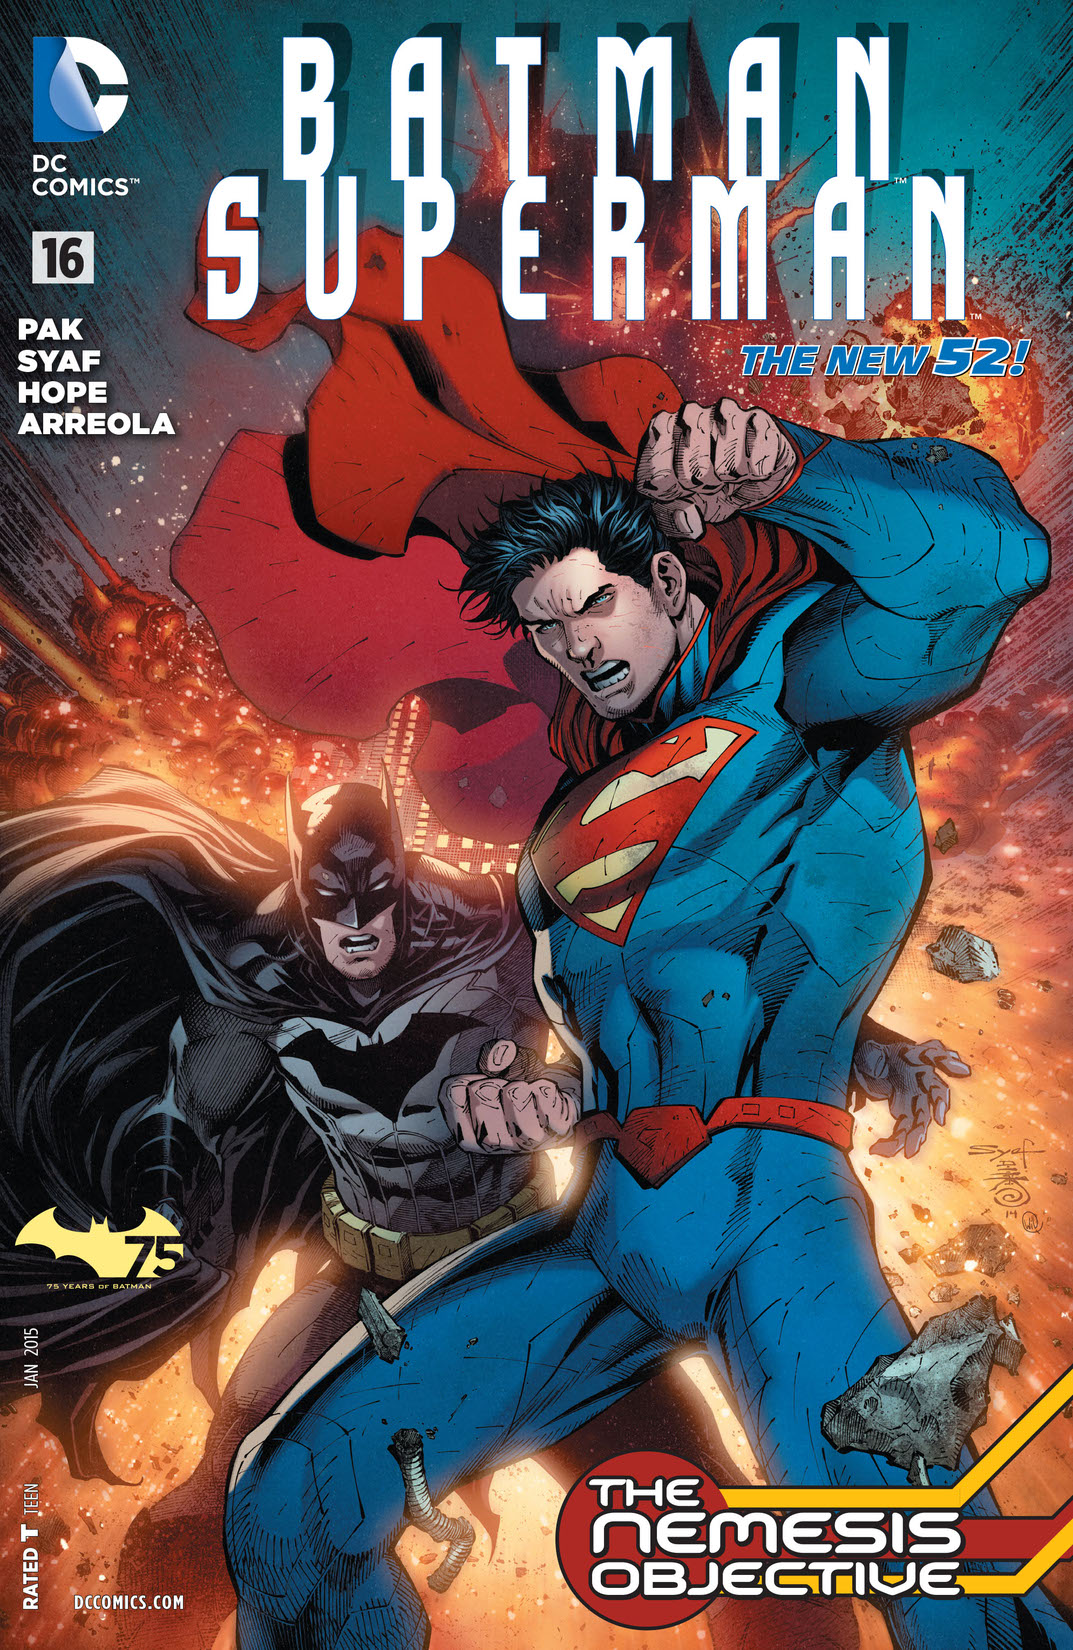 Batman/Superman (2013-) #16 preview images